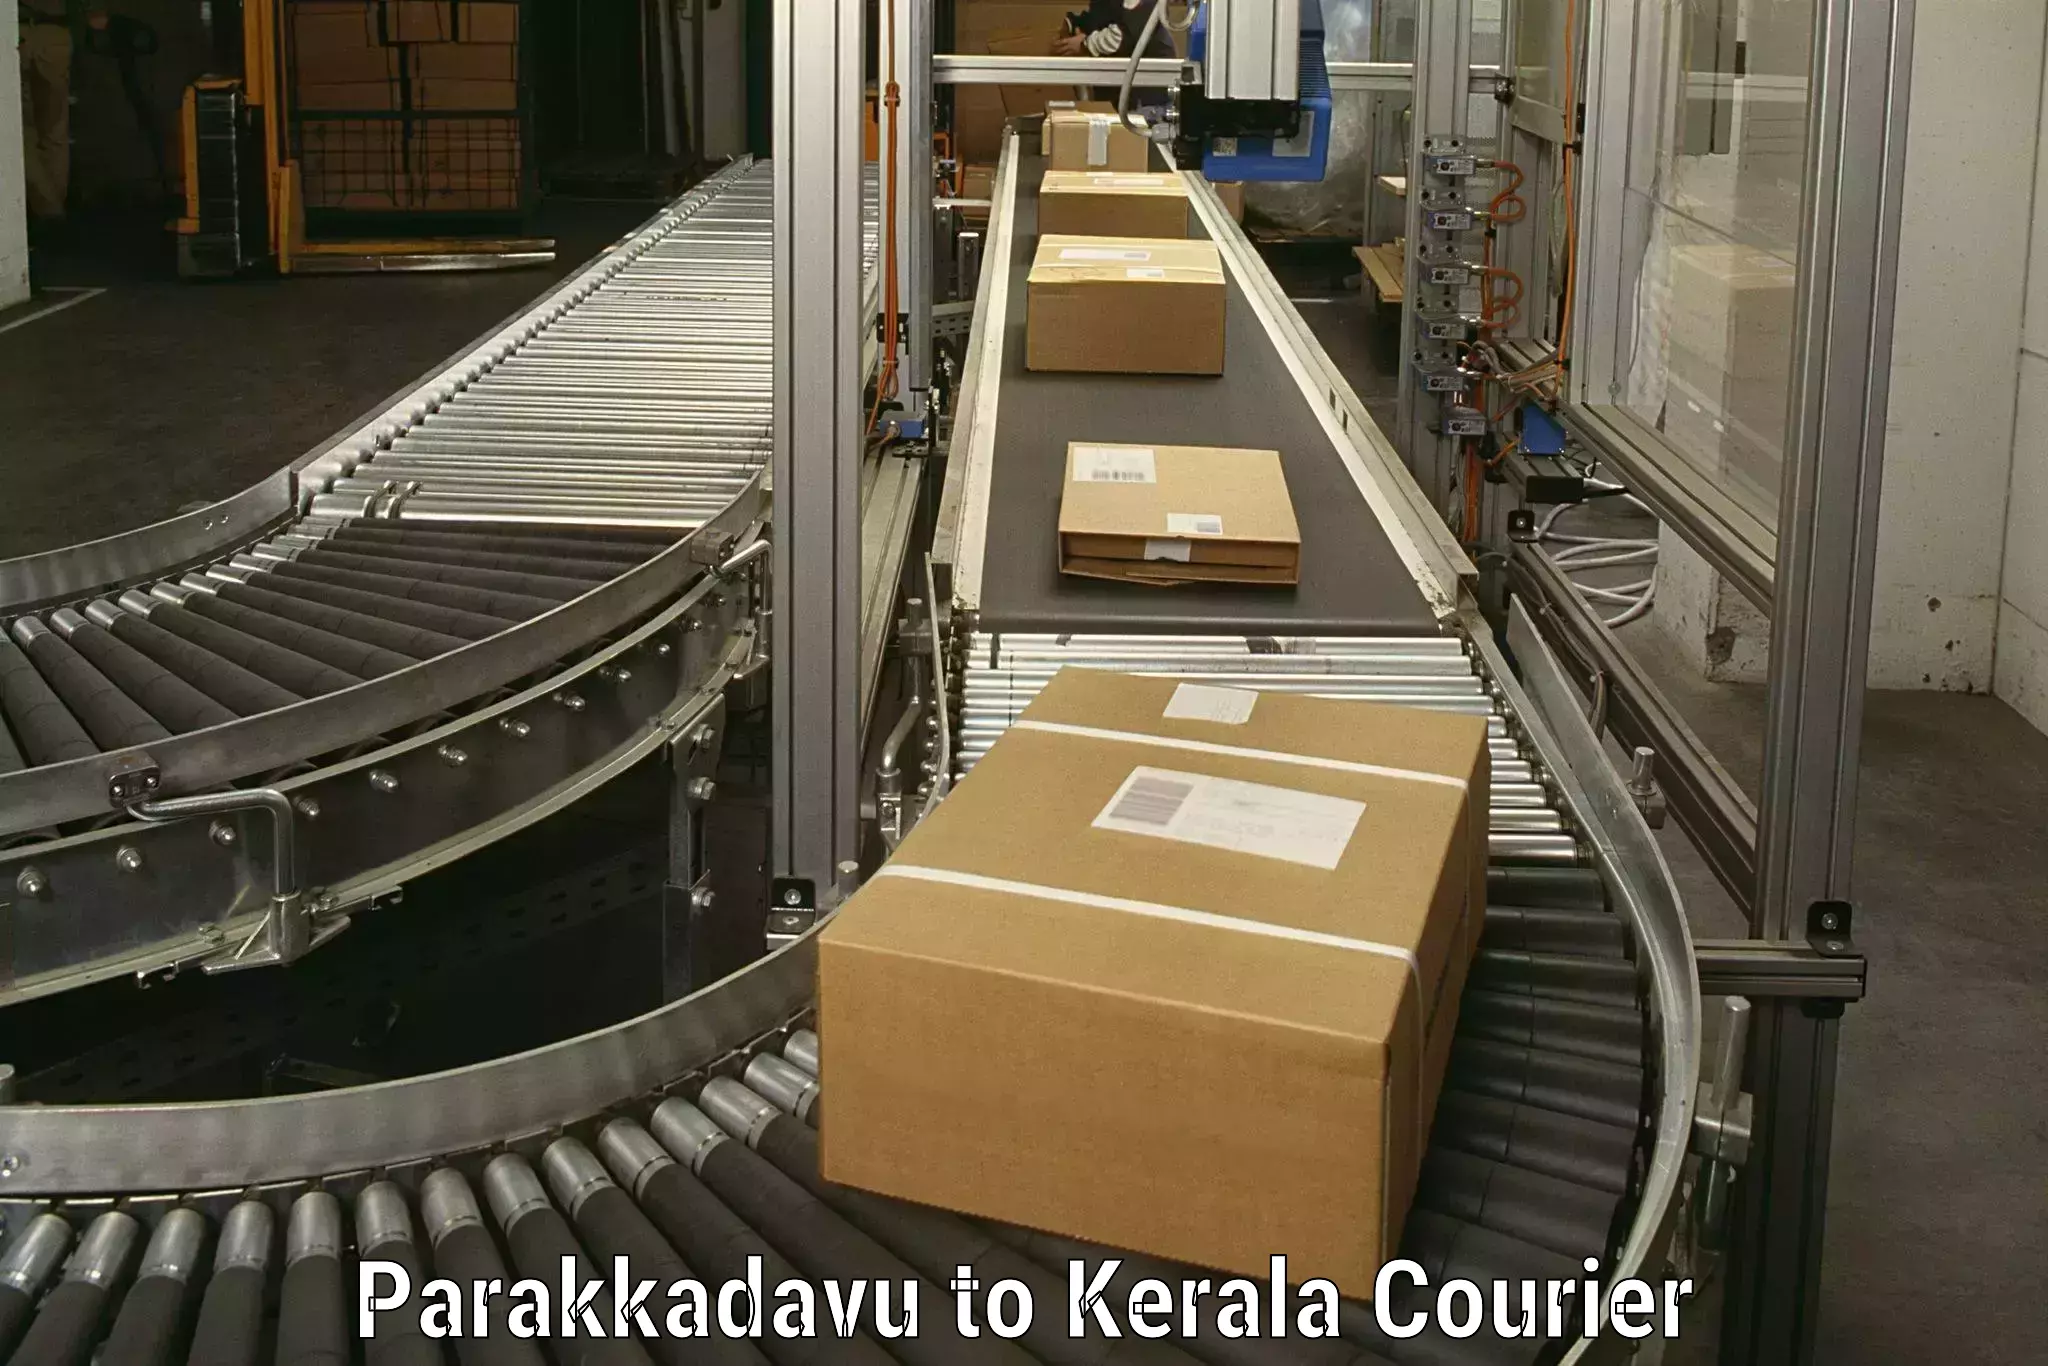 Expert goods movers Parakkadavu to Pala